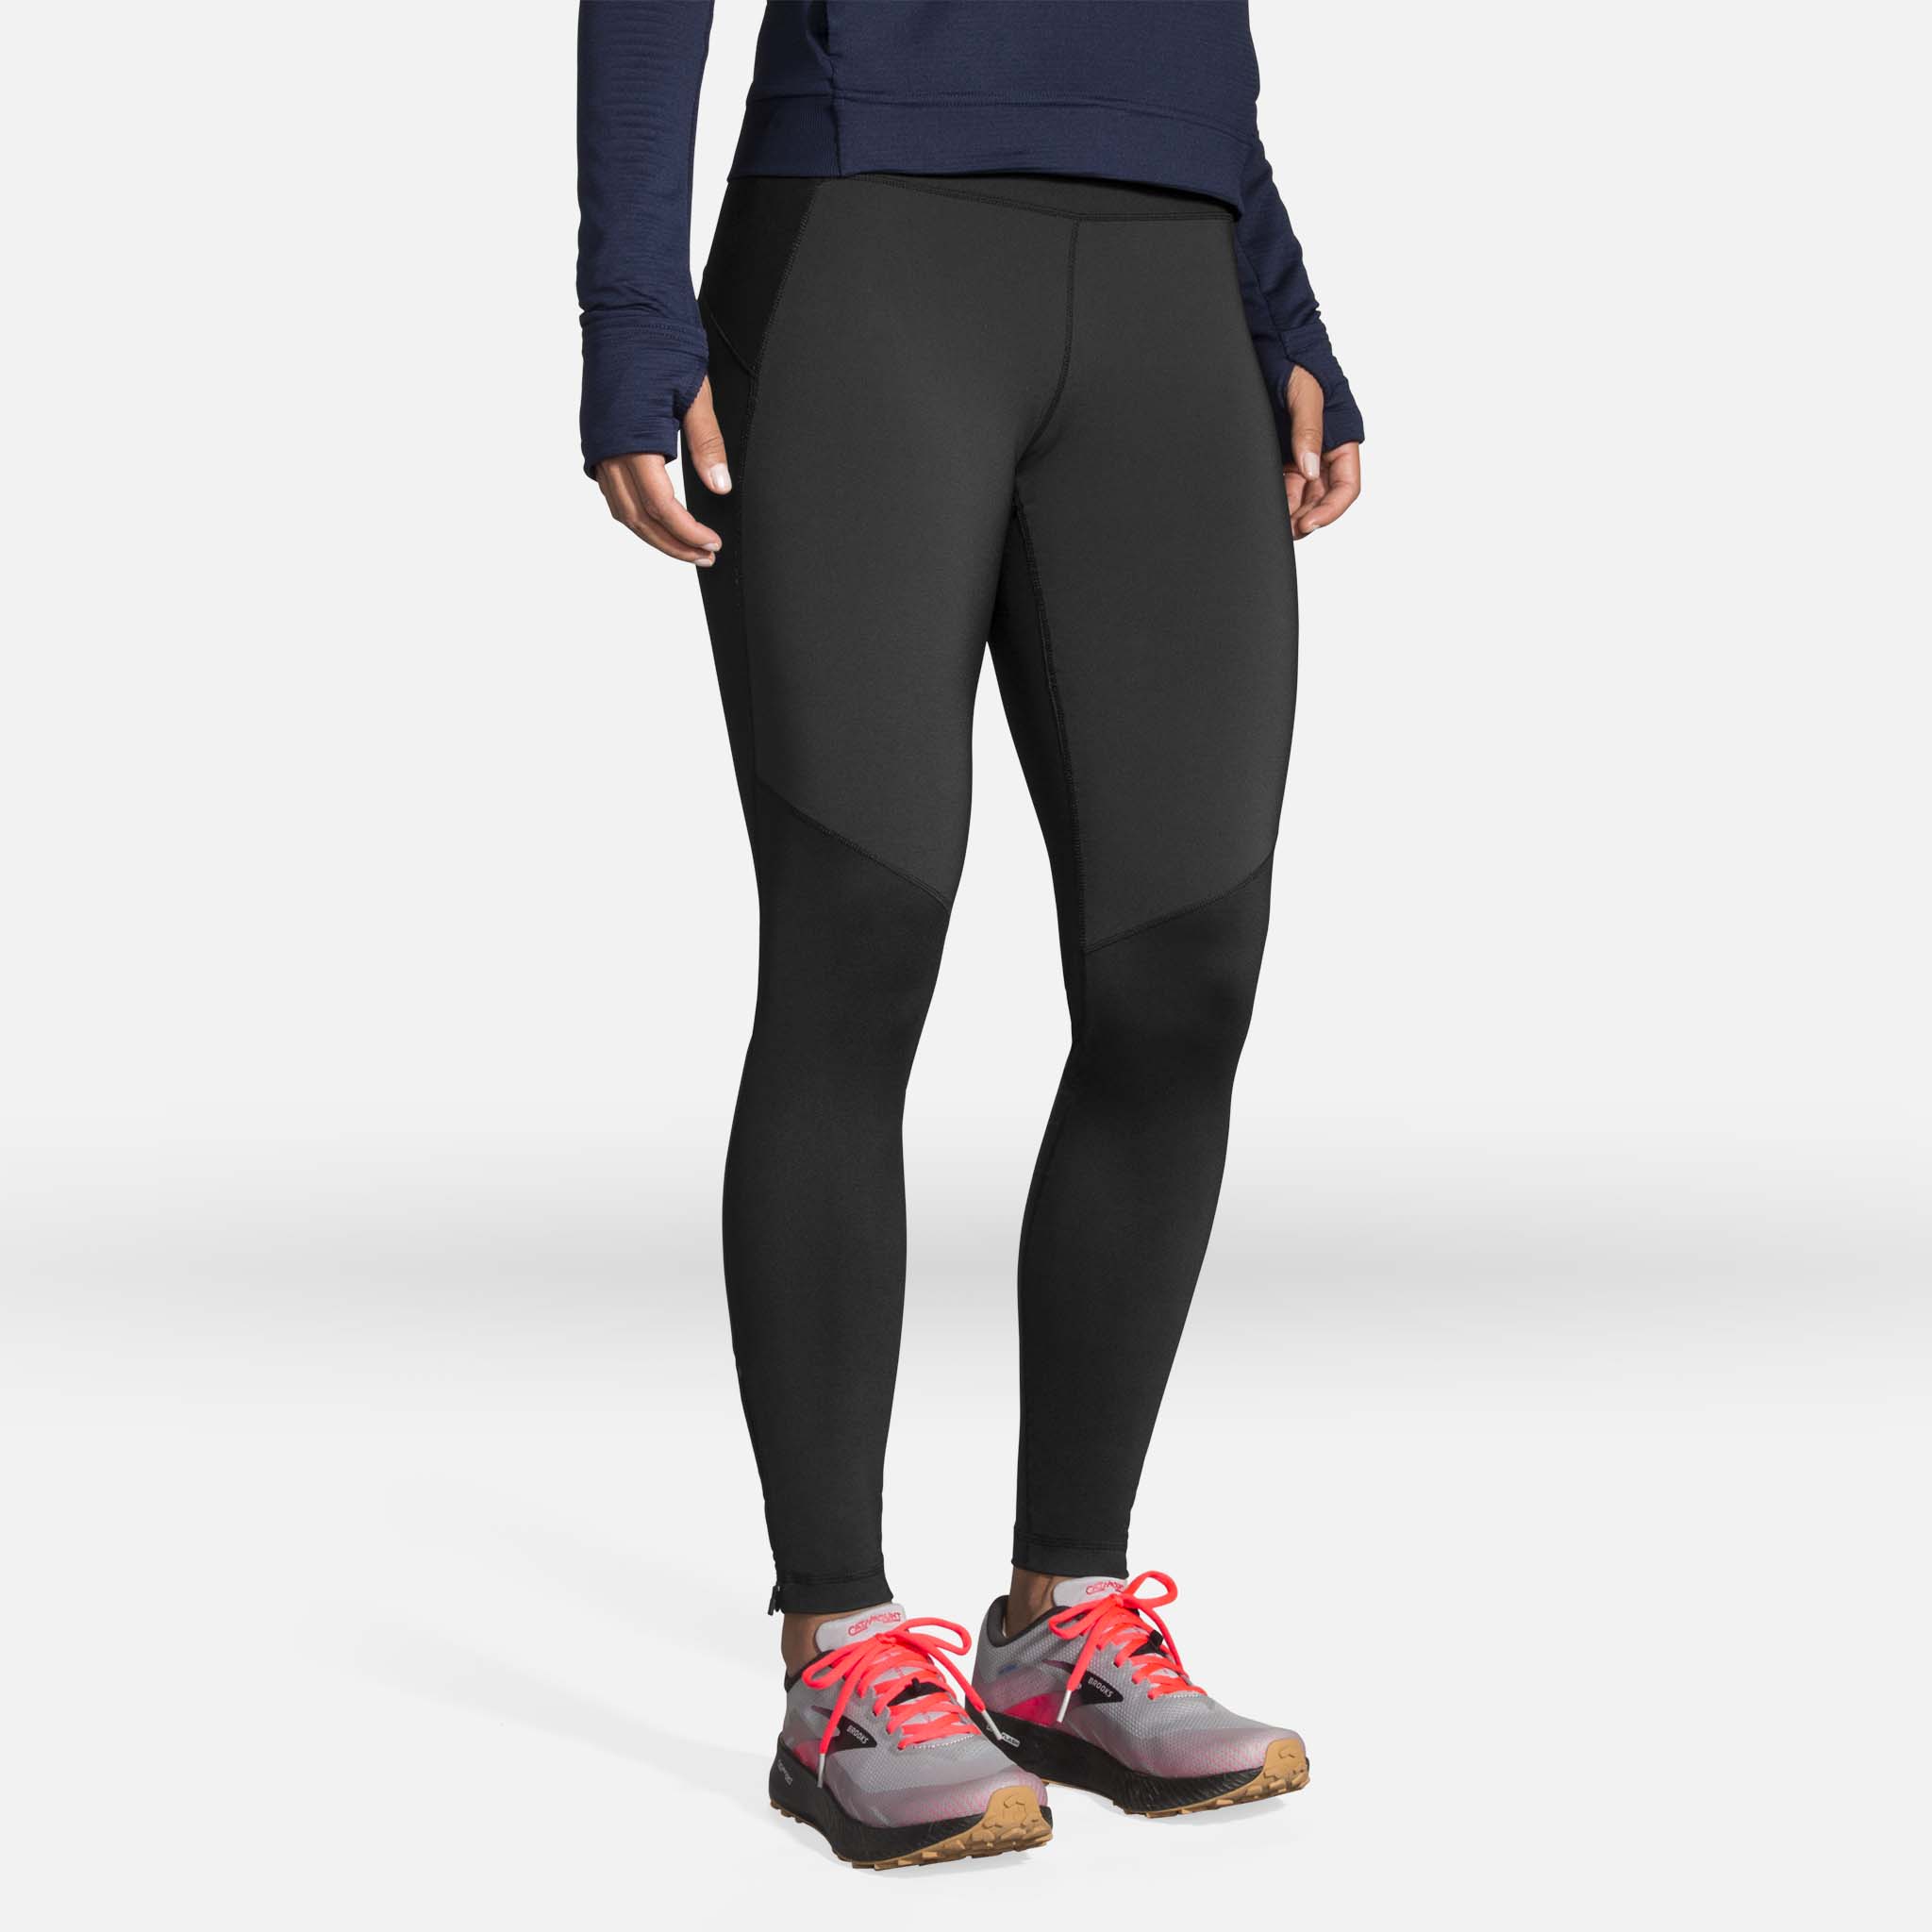 Brooks Switch Hybrid running pants for women - Soccer Sport Fitness